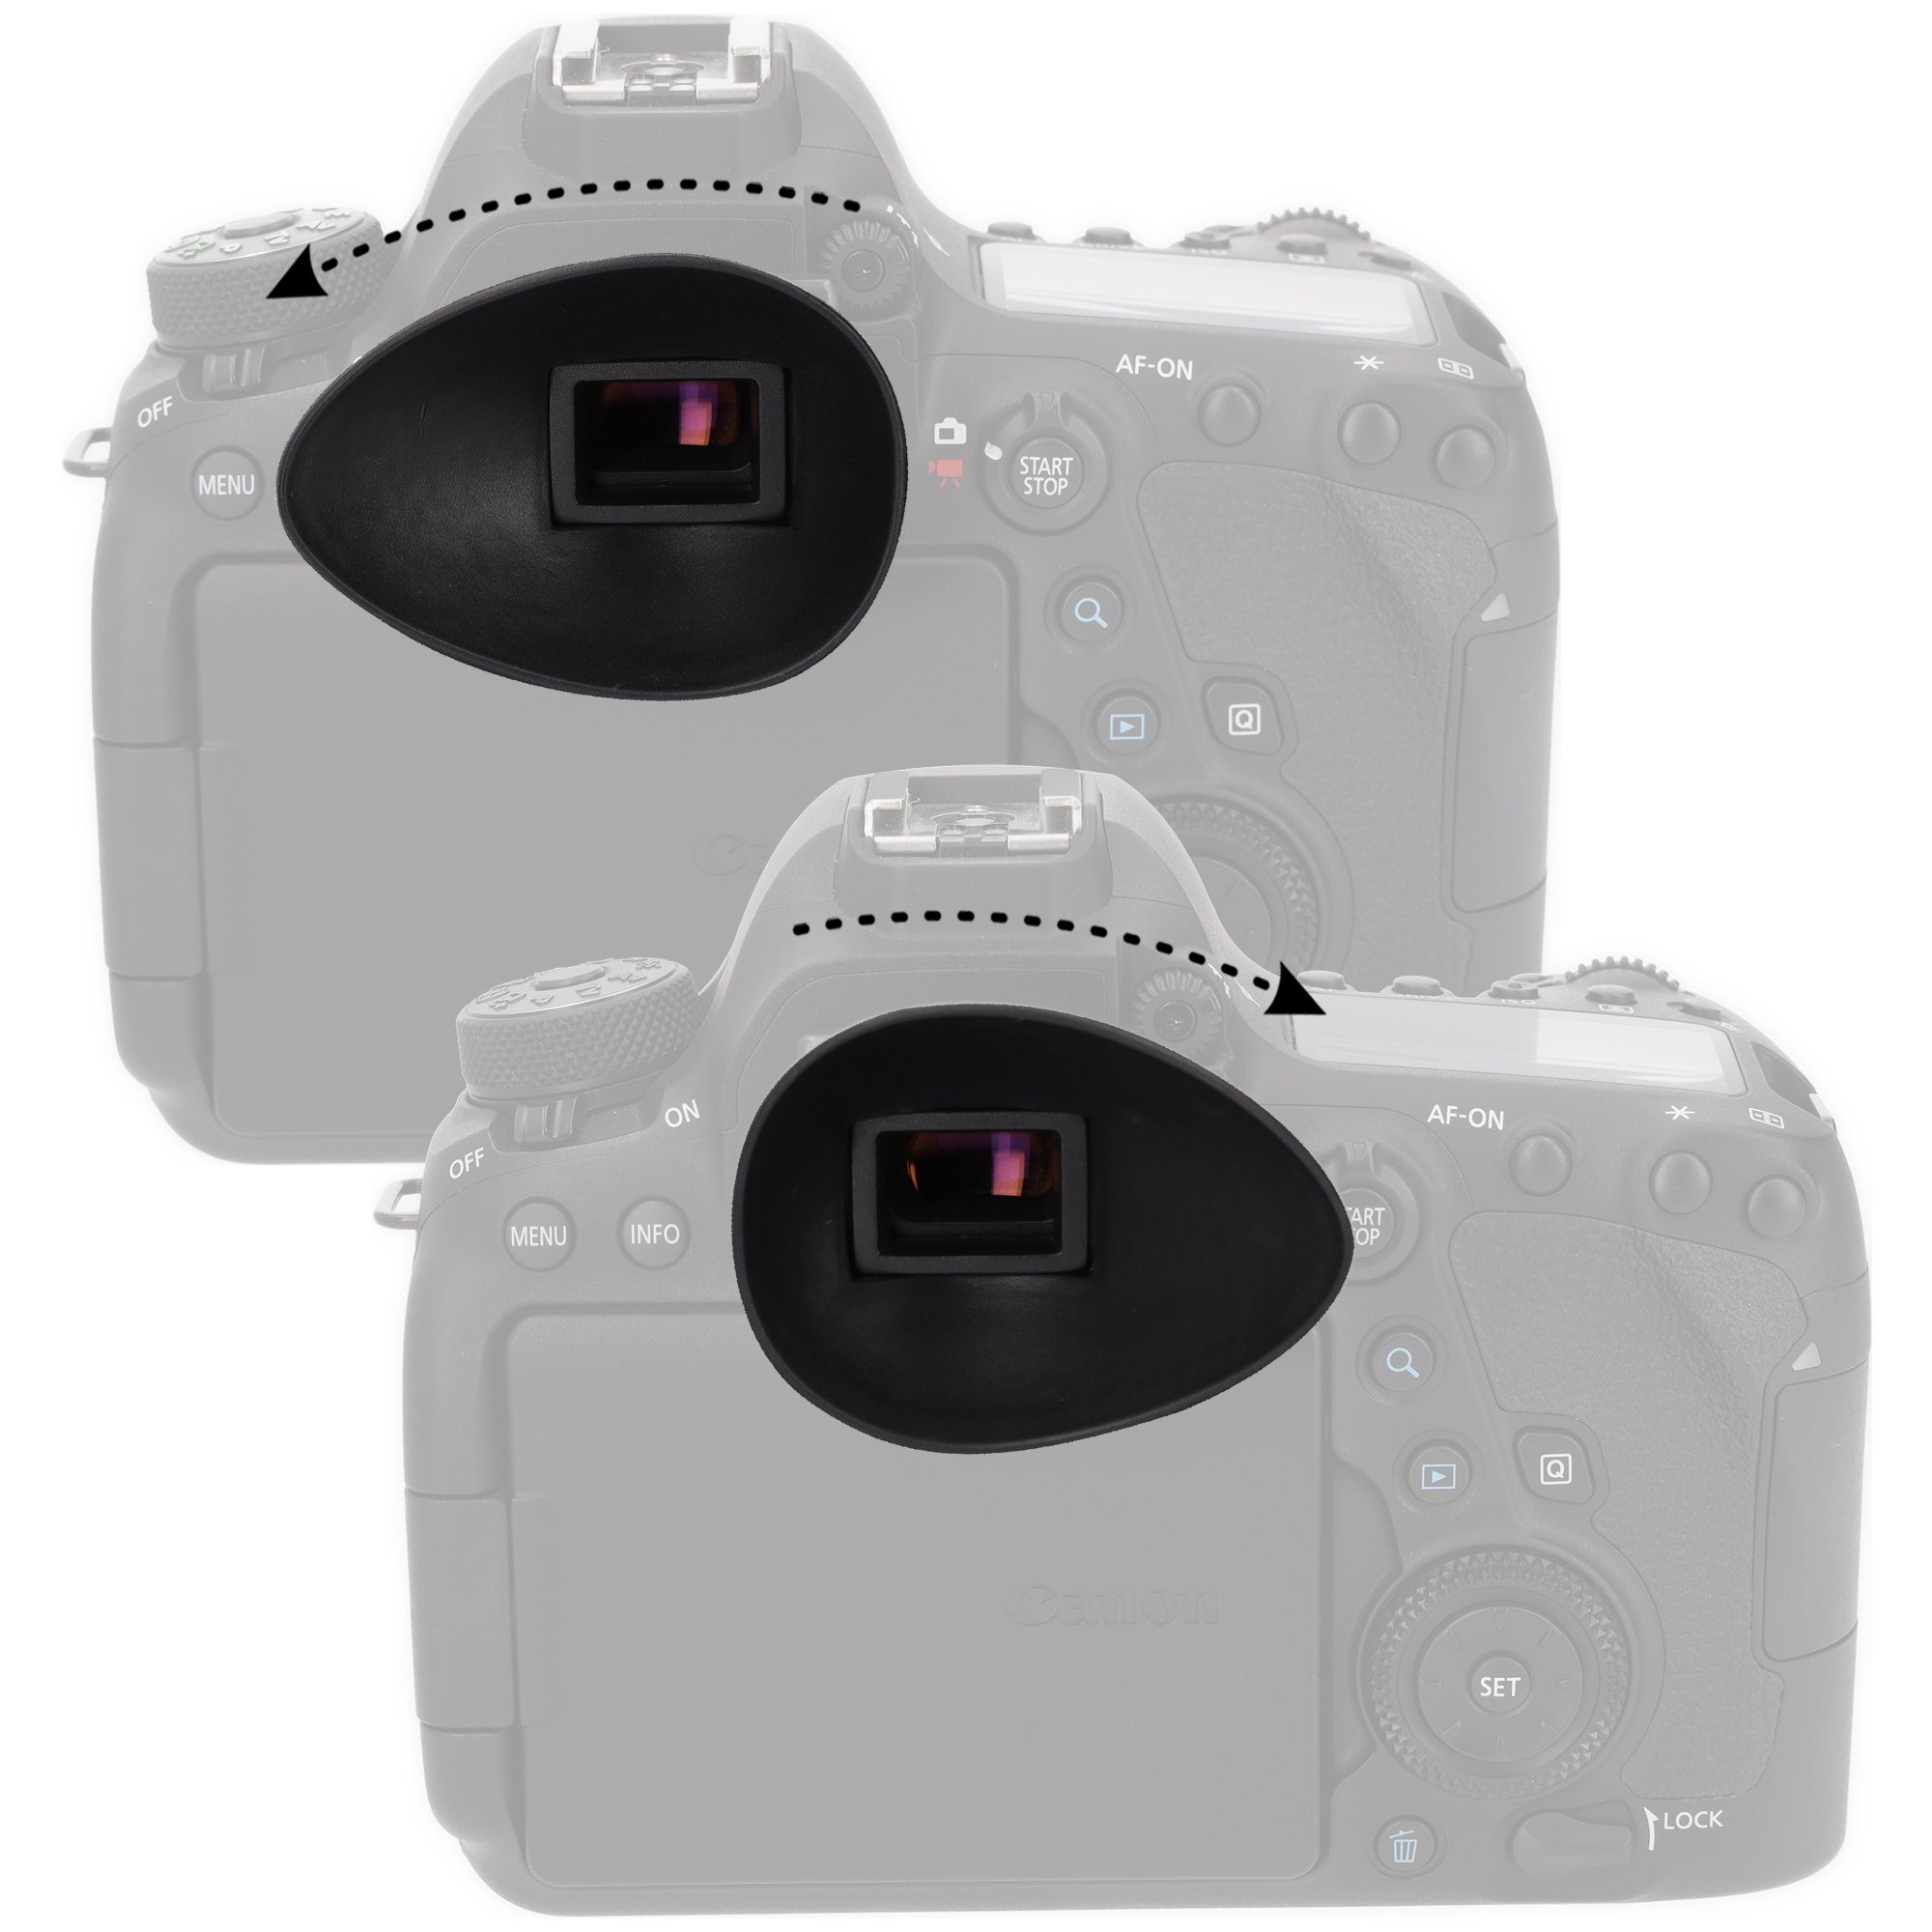 D7000 zBD3100 Tropfenform ayex D90 D300s Aufstecksucher Augenmuschel 22mm D5000 Nikon D40x